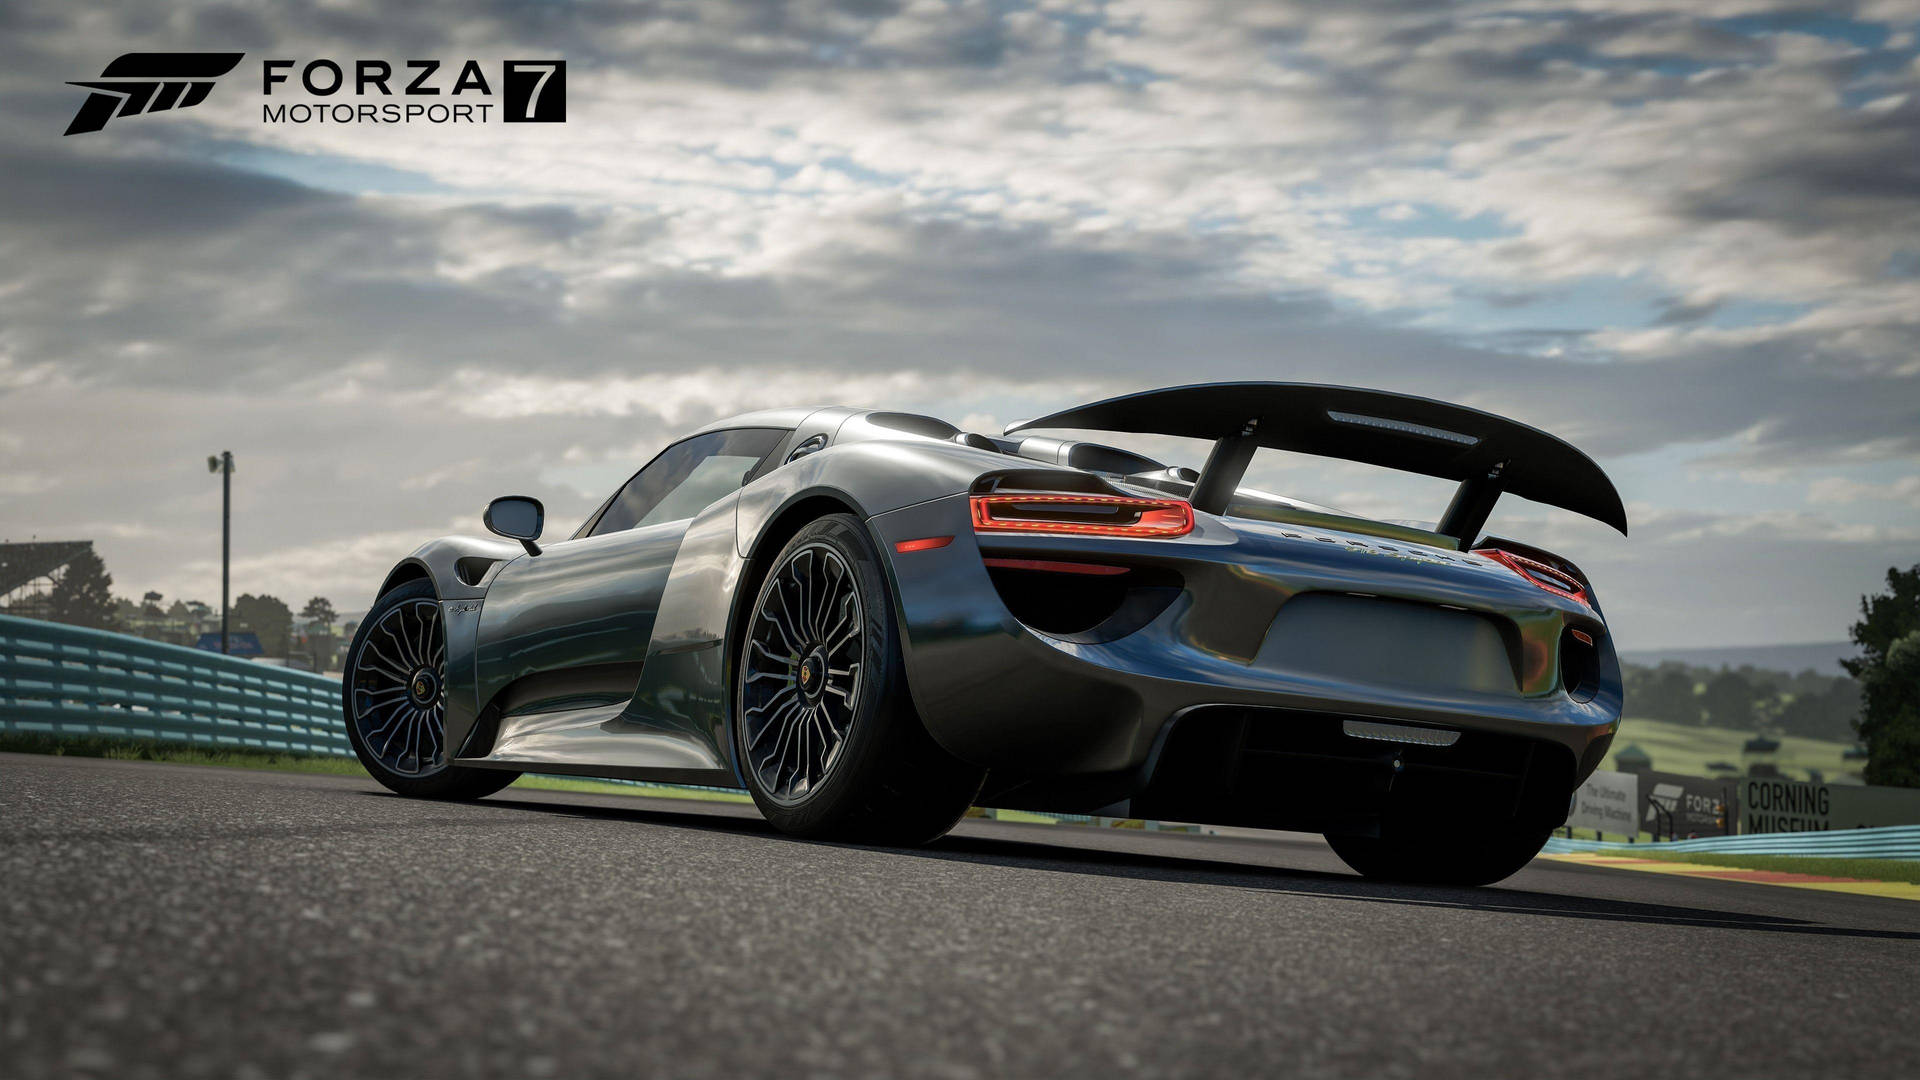 Thrilling Speed - Lotus Elise On Forza 7 Background